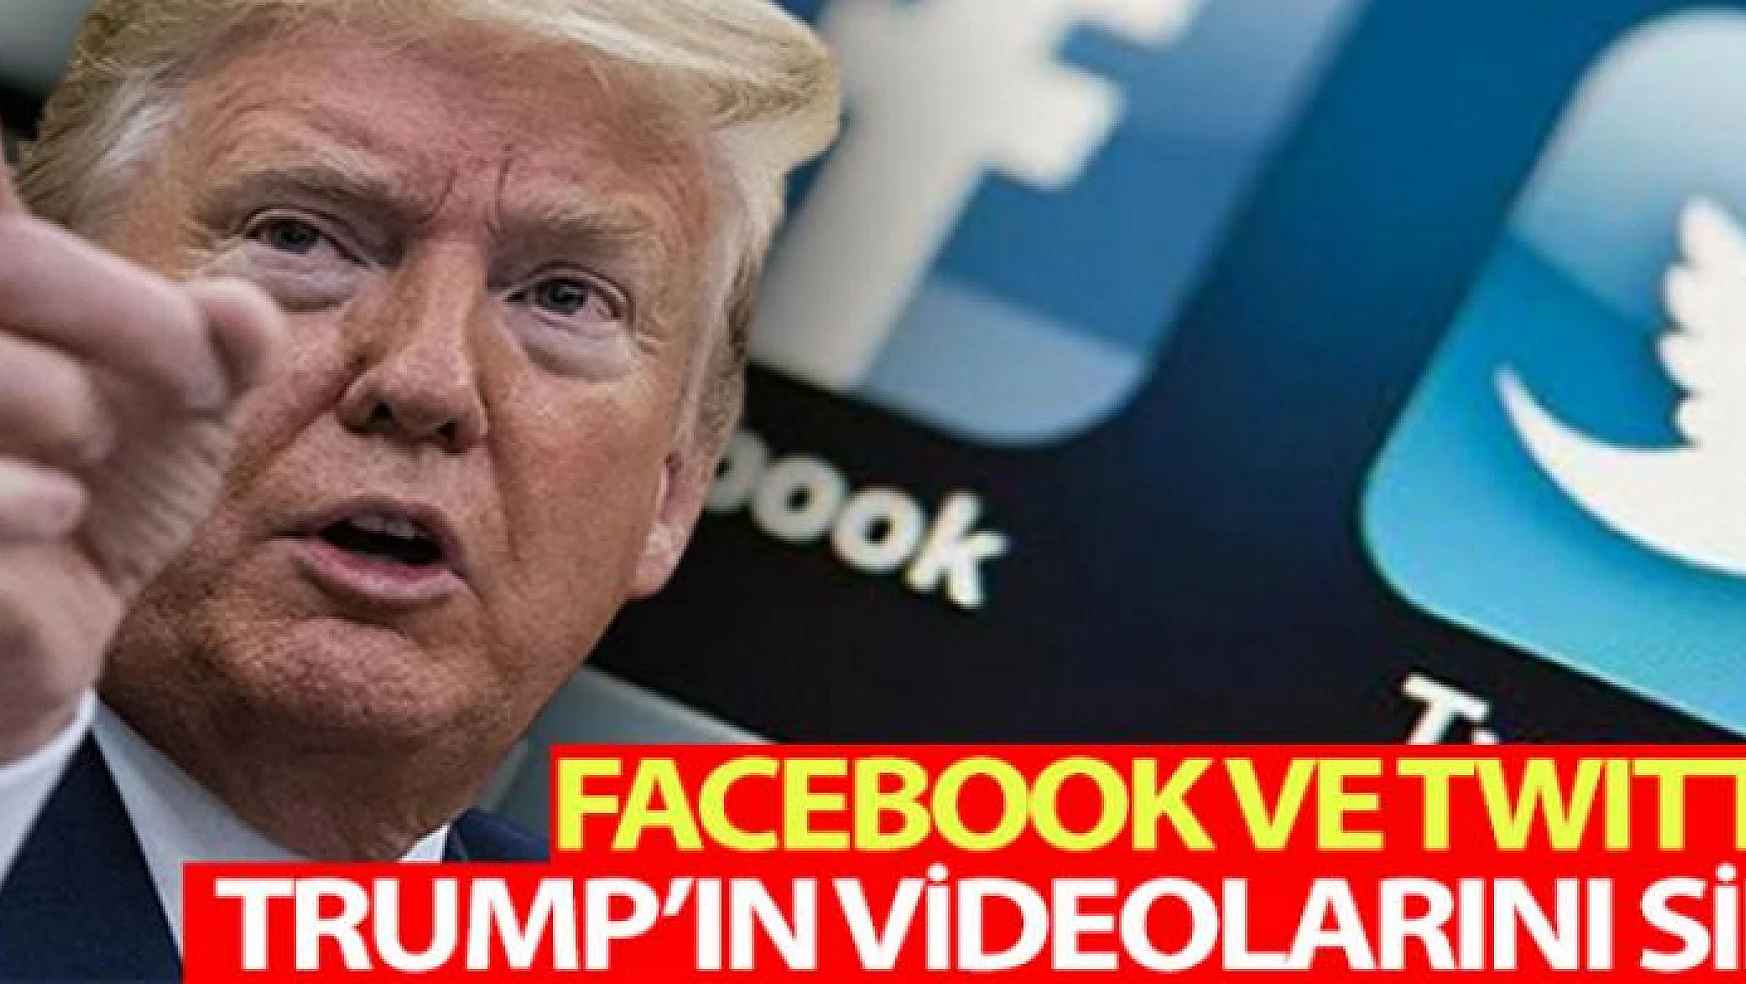 Facebook ve Twitter, Trump'ın paylaştığı videoları sildi